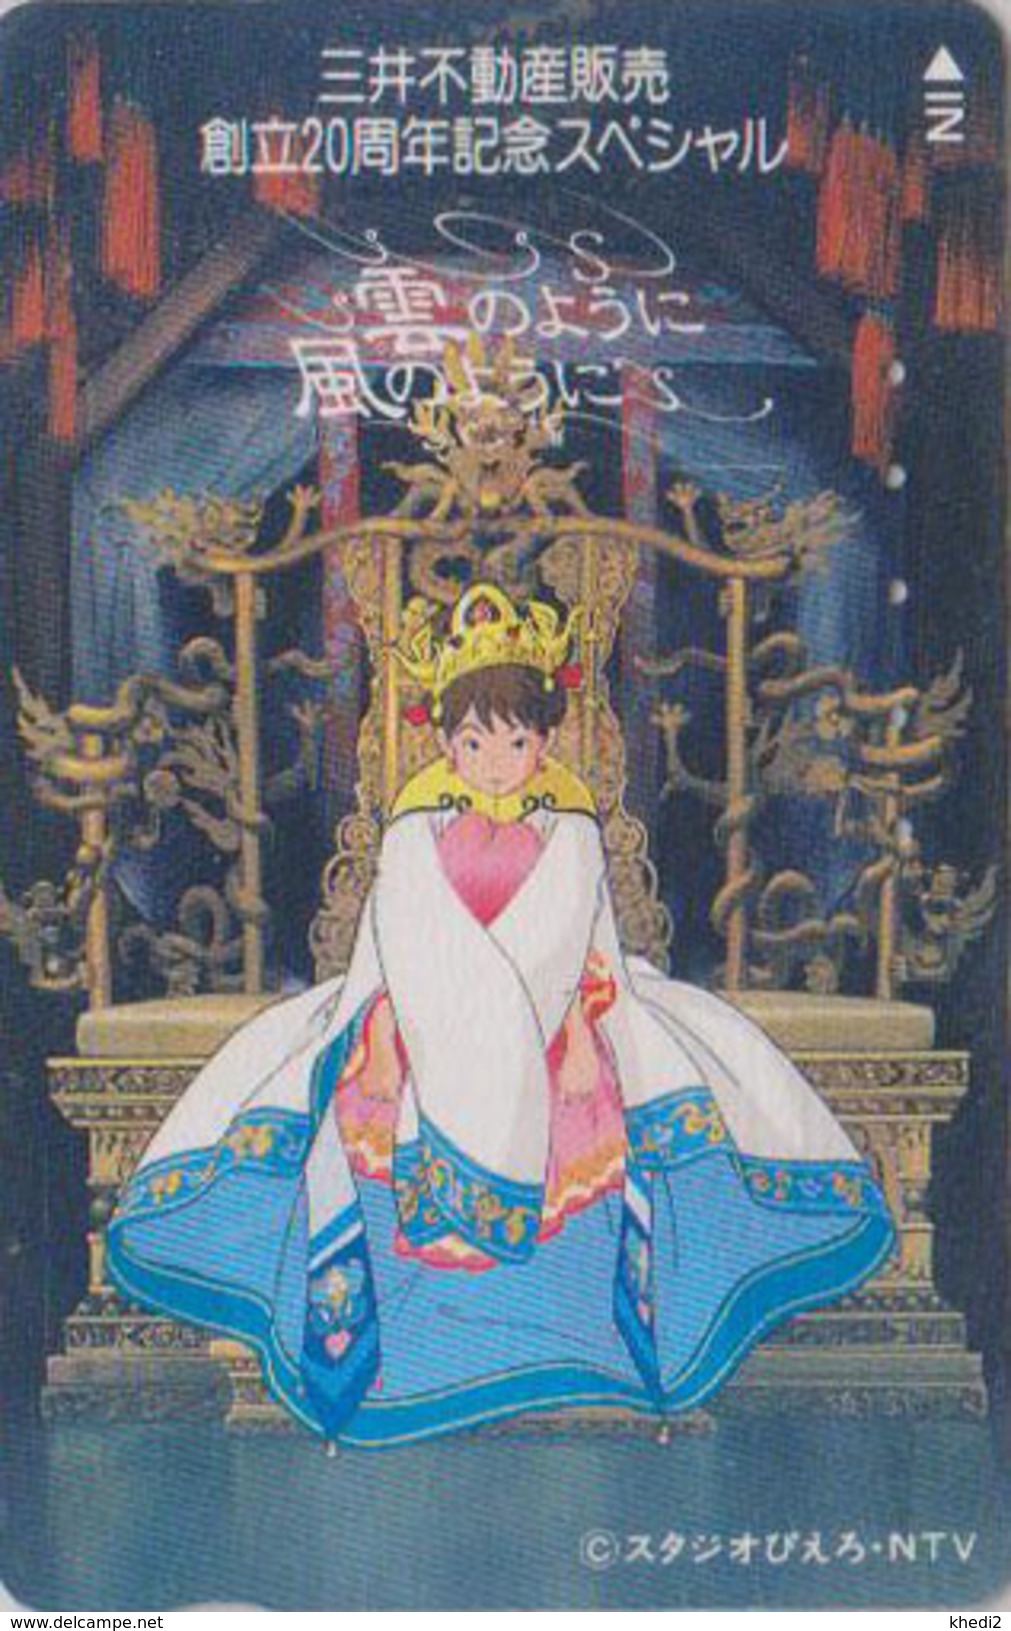 Télécarte Japon / 110-011 - MANGA - FANTASY NOVEL / Princess - ANIME Japan Phonecard / NTV  - BD COMICS TK - 9225 - BD